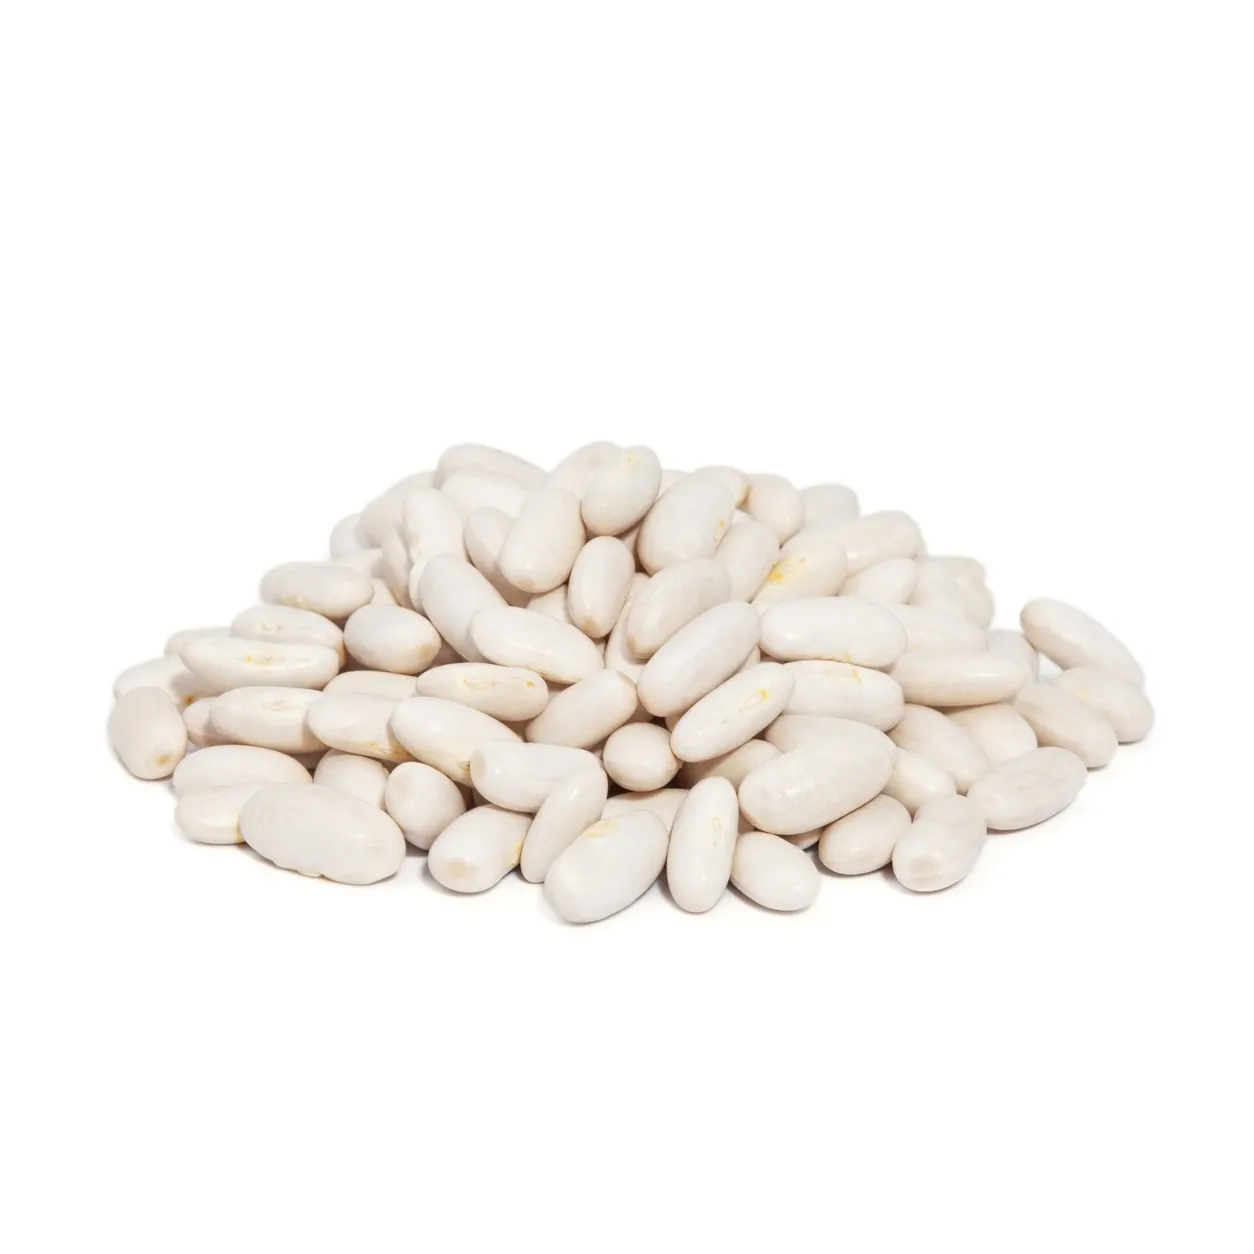 white kidney beans large size white kidney beans export/Quality White Kidney Beans